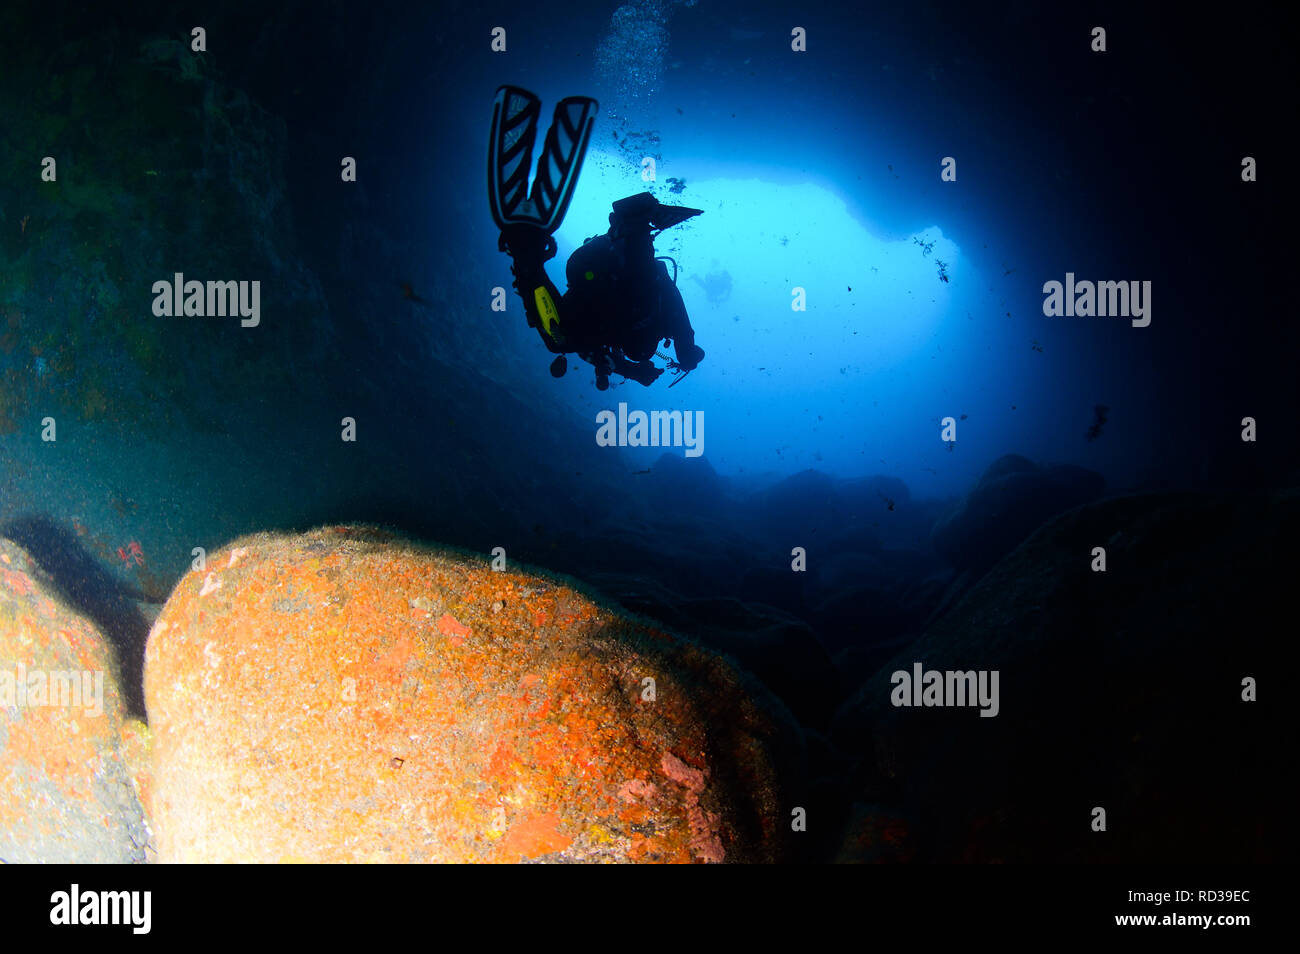 La plongée dans des cavernes à Tenerife - Îles Canaries Banque D'Images